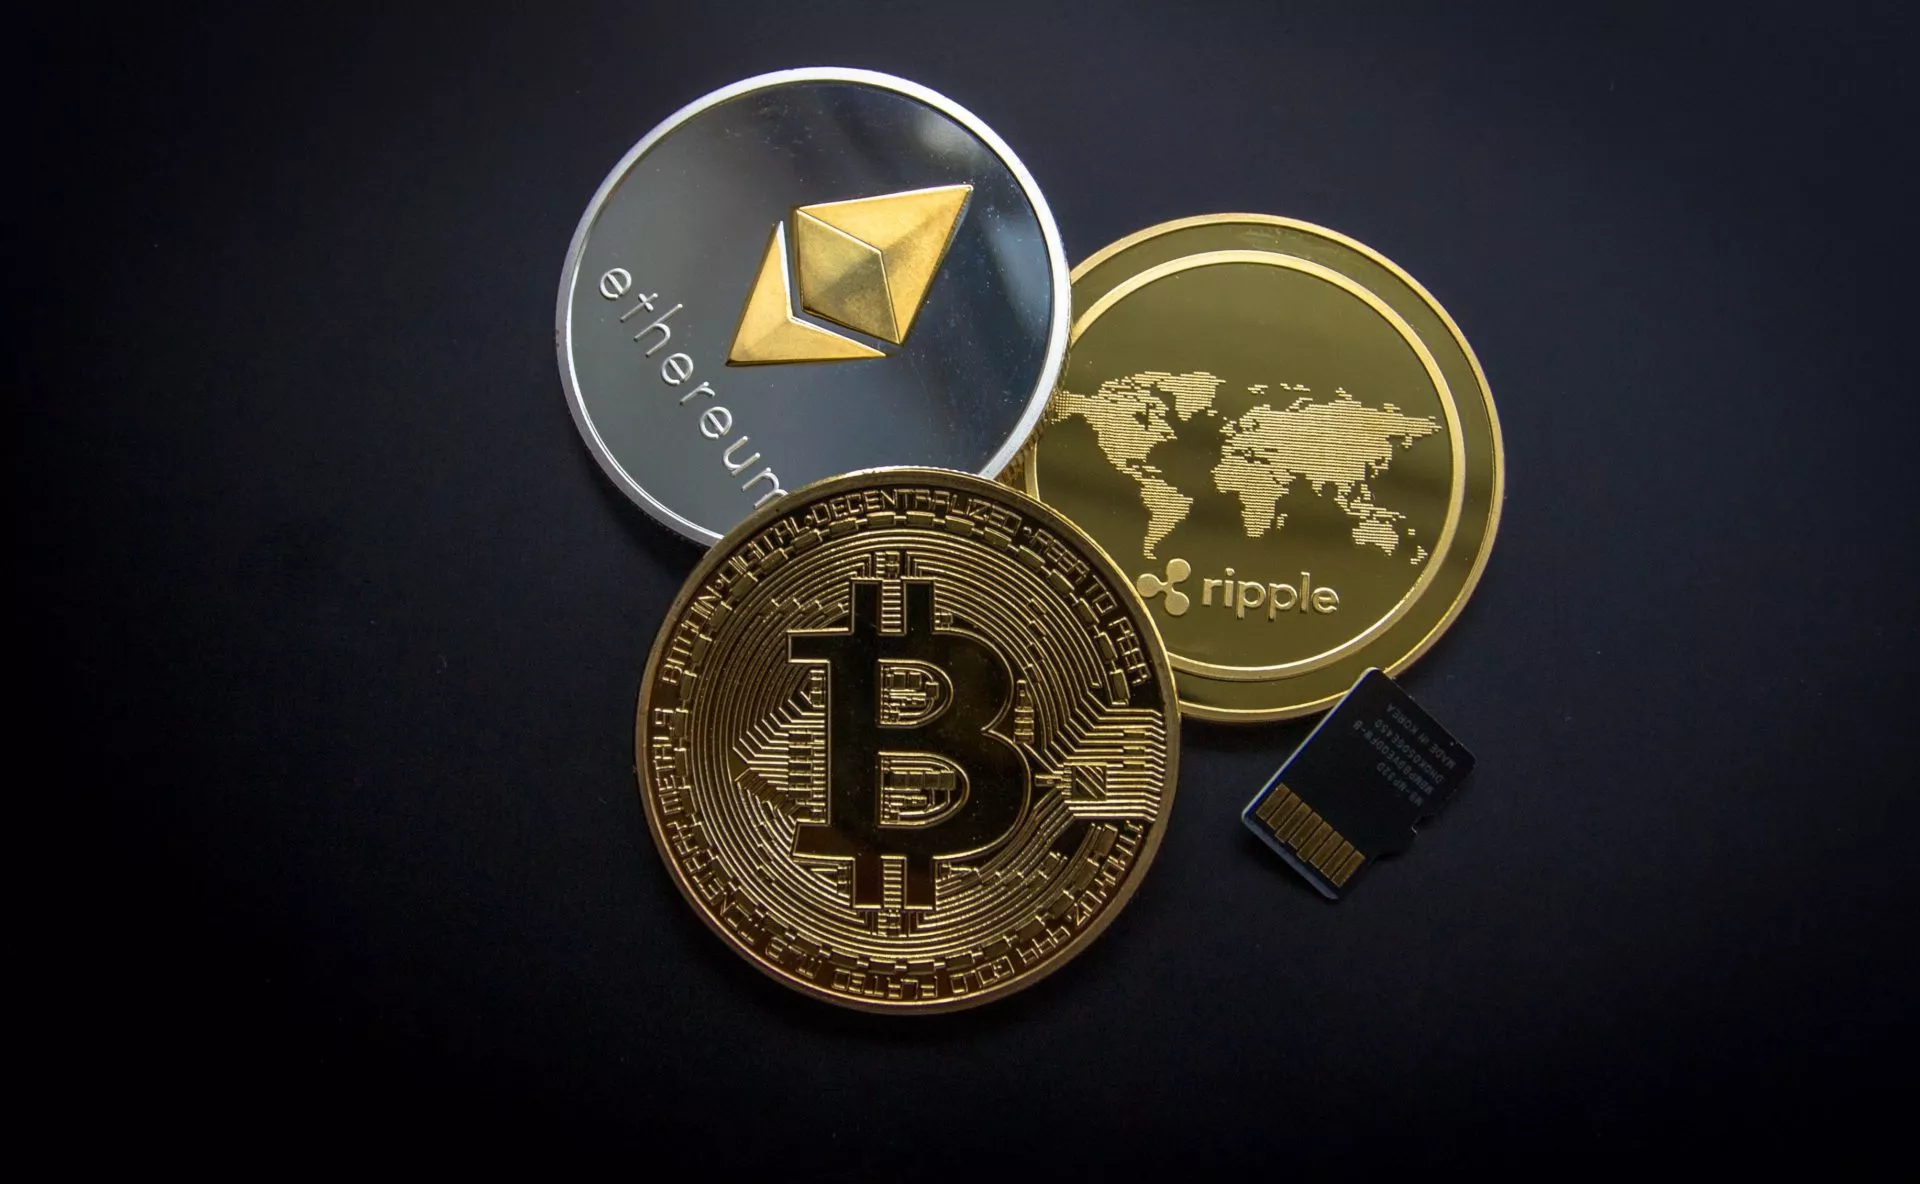 Bitcoin prijs boven $7000 dollar, Ethereum en Ripple stijgen mee